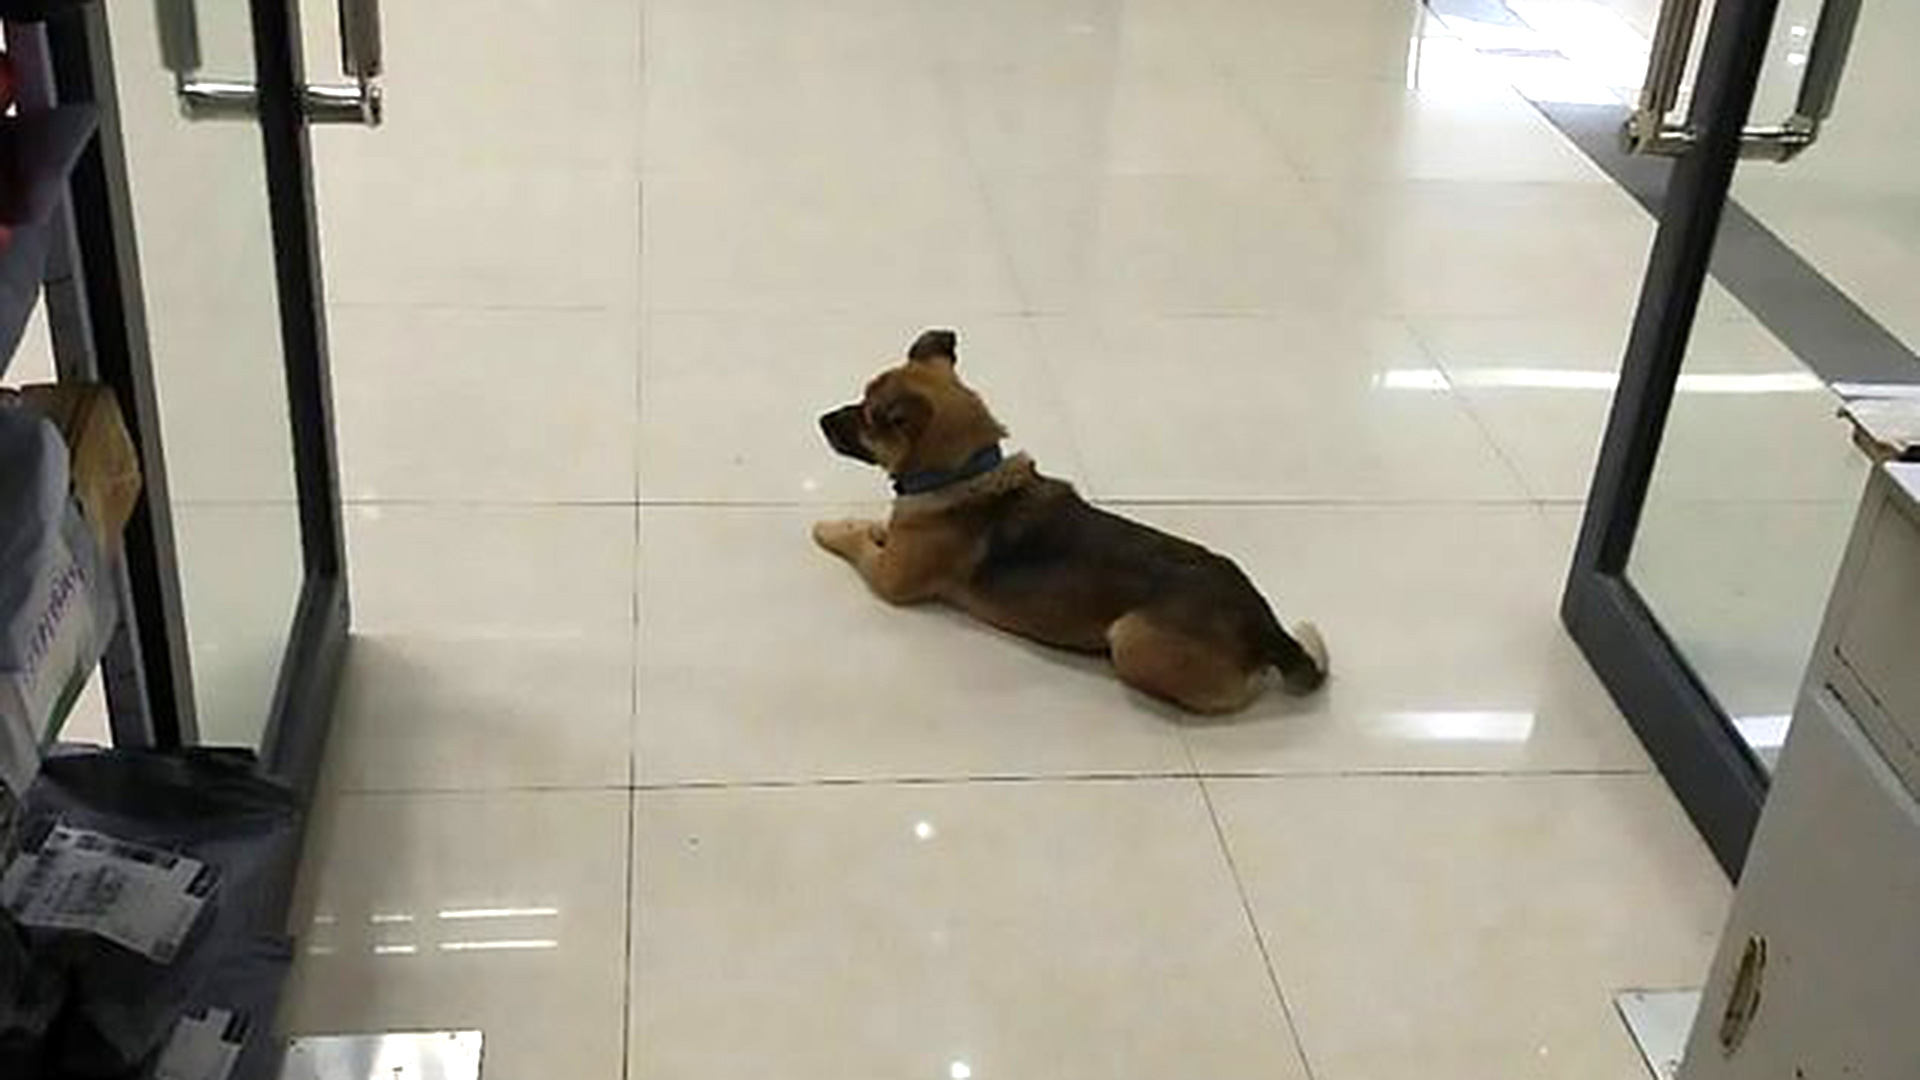 La misma historia se replicó en Wuhan, China, con otro perrito que esperó a su dueño que murió por COVID-19 (Foto: Archivo)